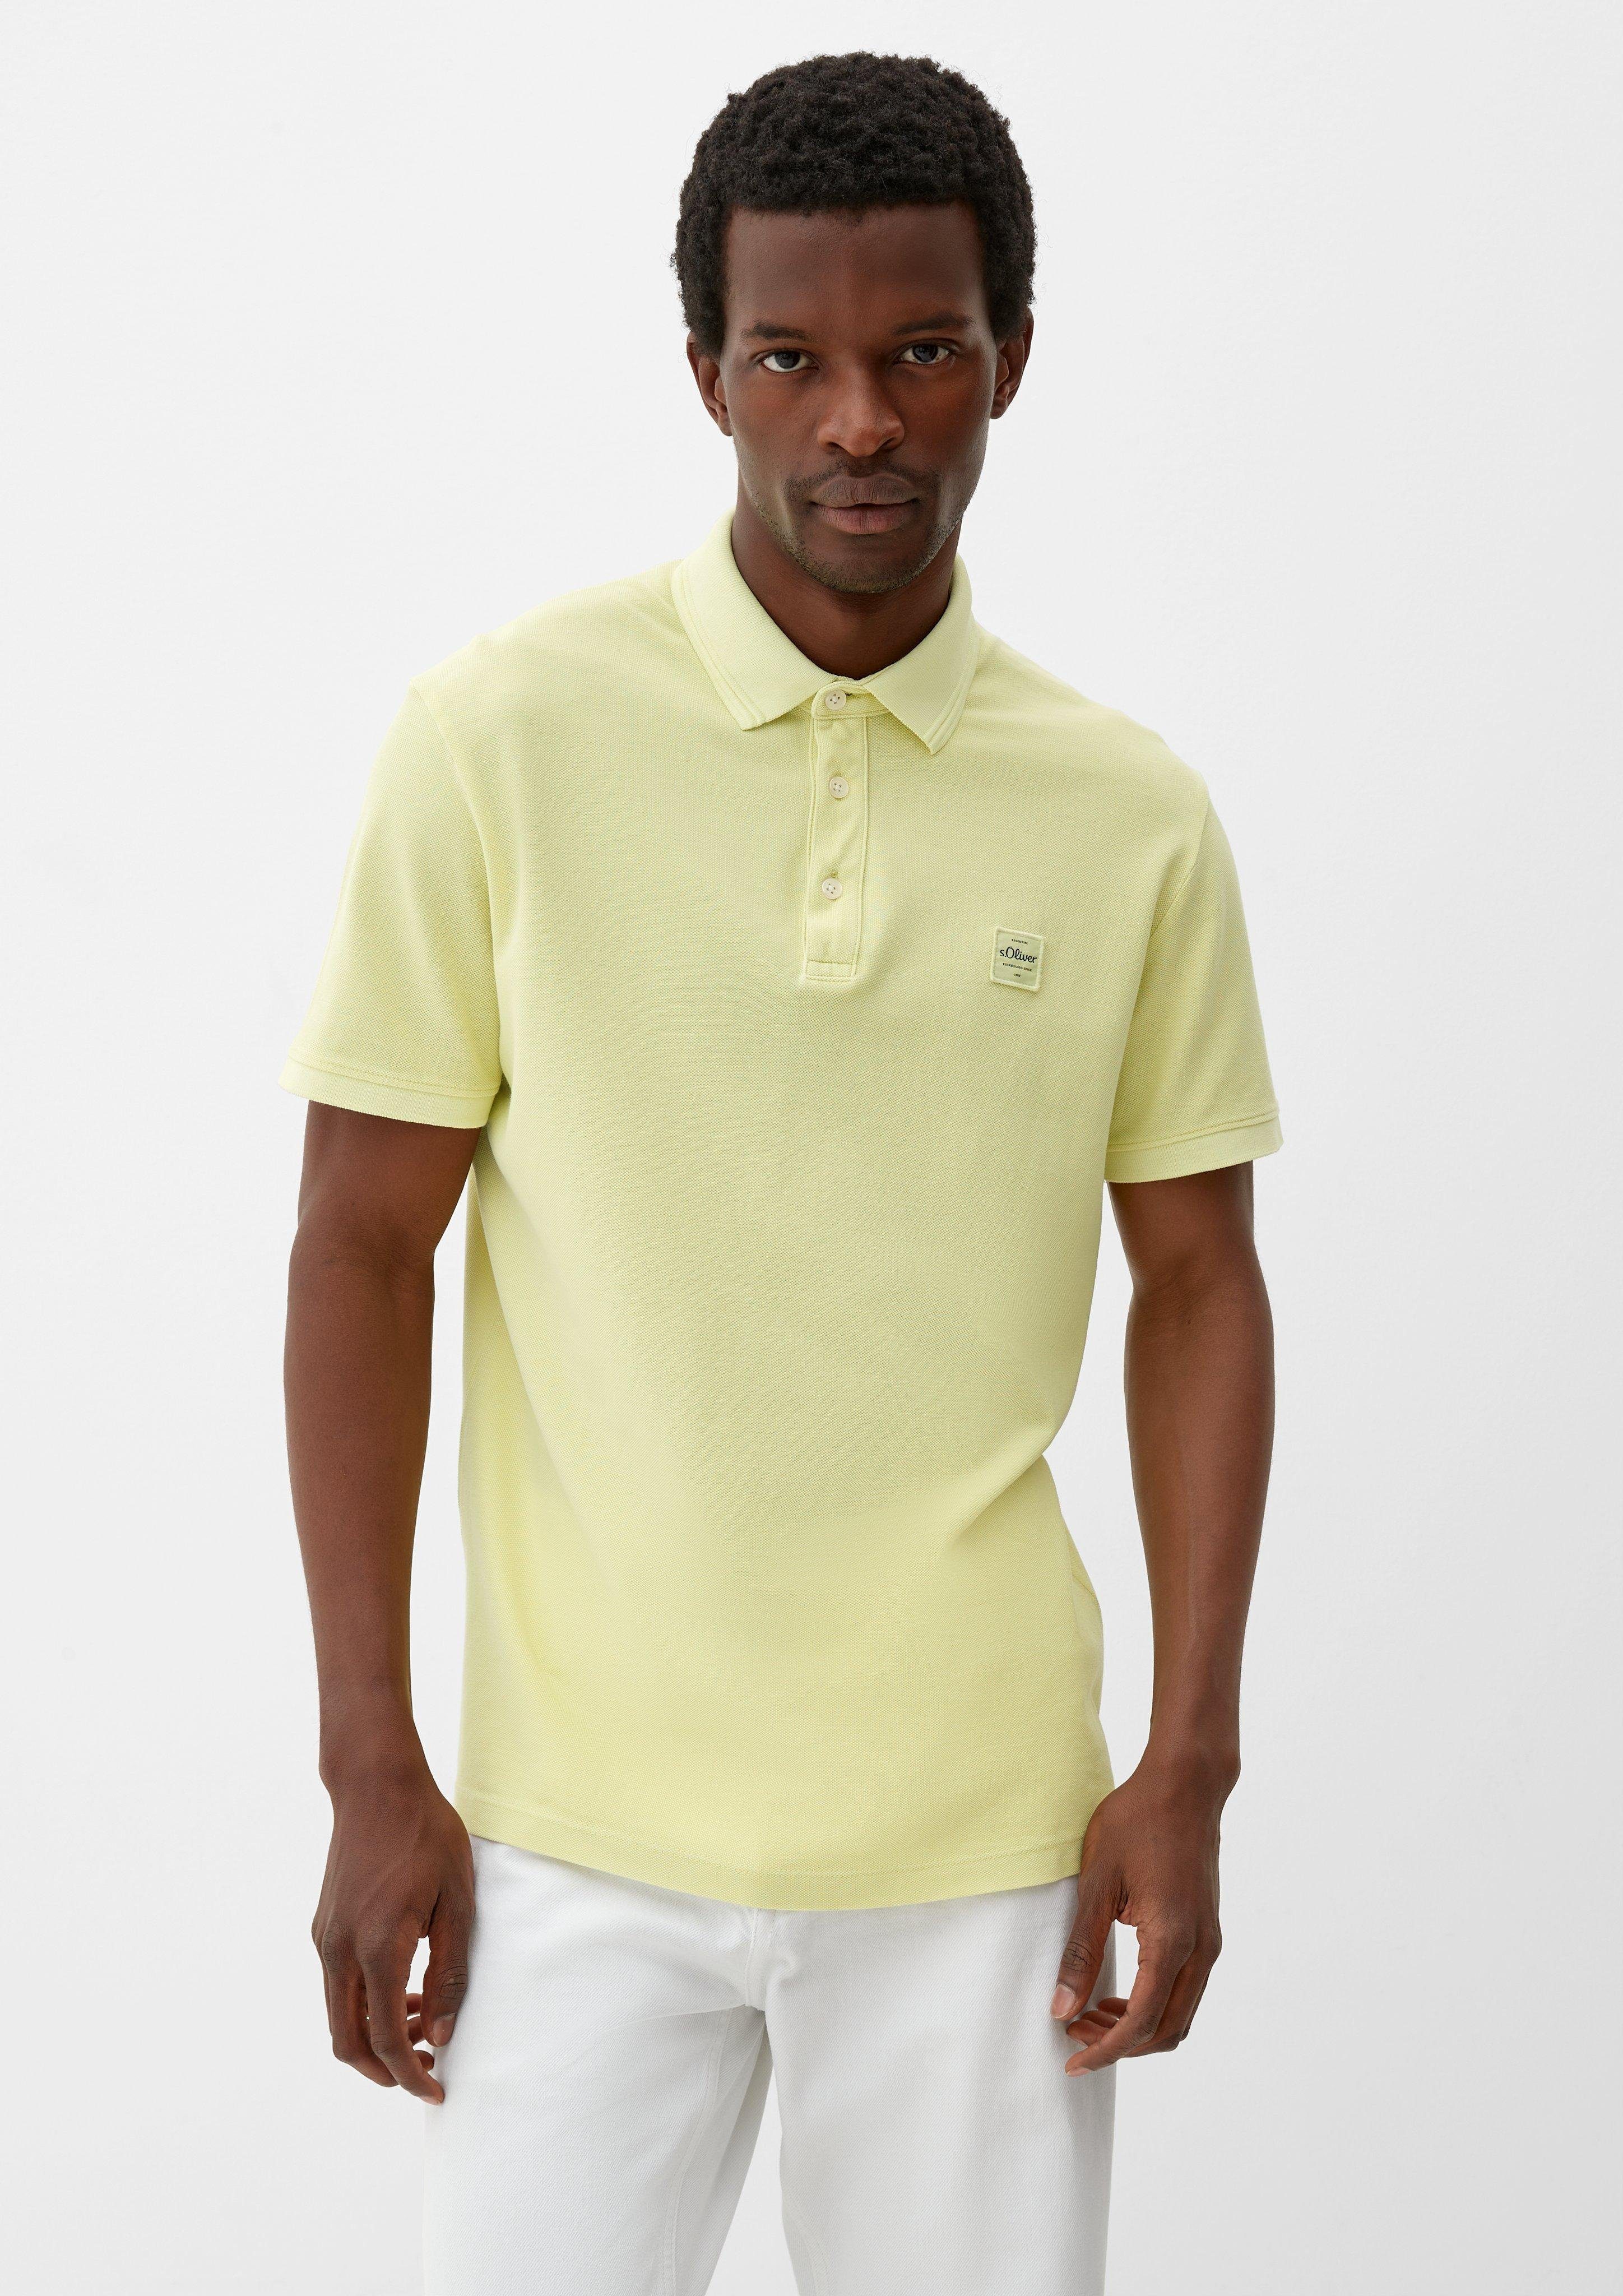 s.Oliver Poloshirt Polo-Shirt mit Logo-Patch mit Garment Qualität, Piqué, Dye, elastischer in Label-Patch, hochwertig Piquéstruktur, Baumwolle